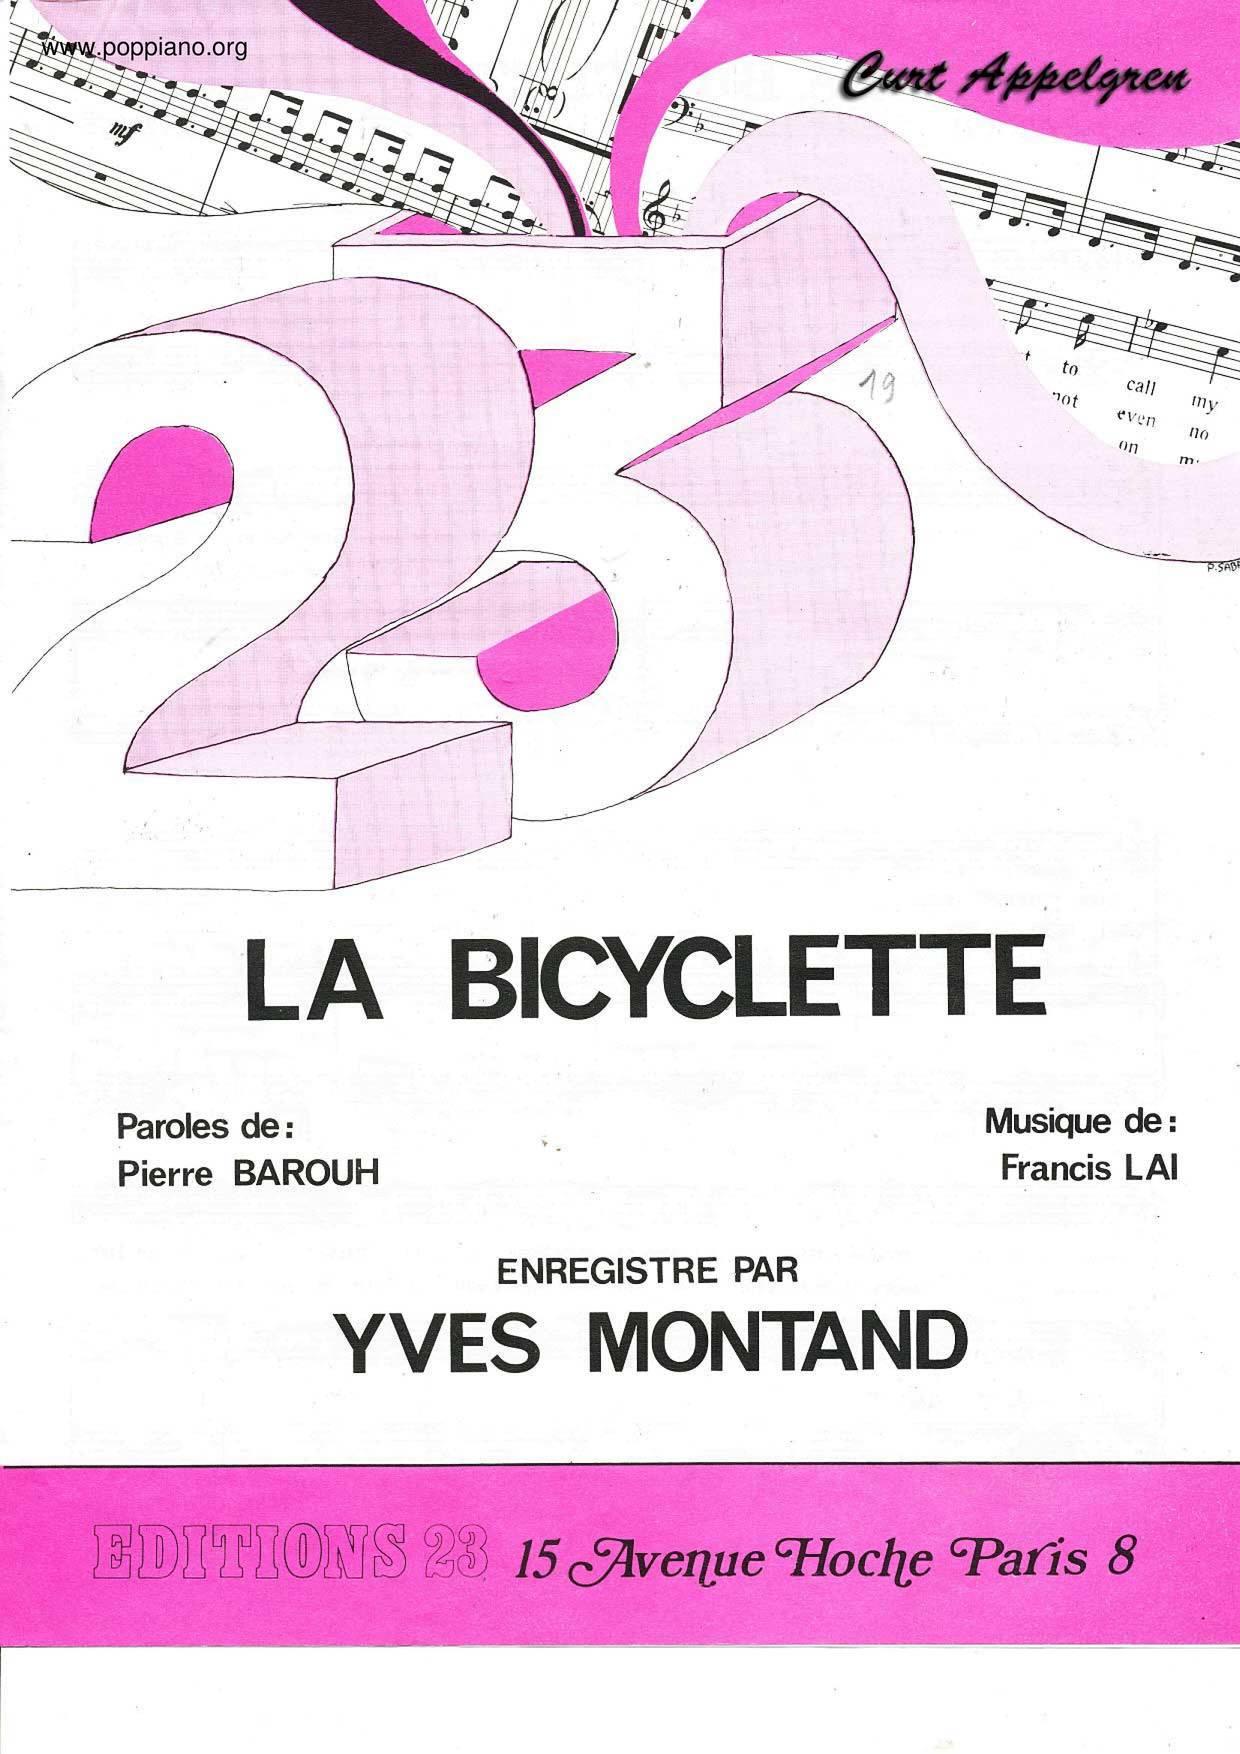 La Bicycletteピアノ譜